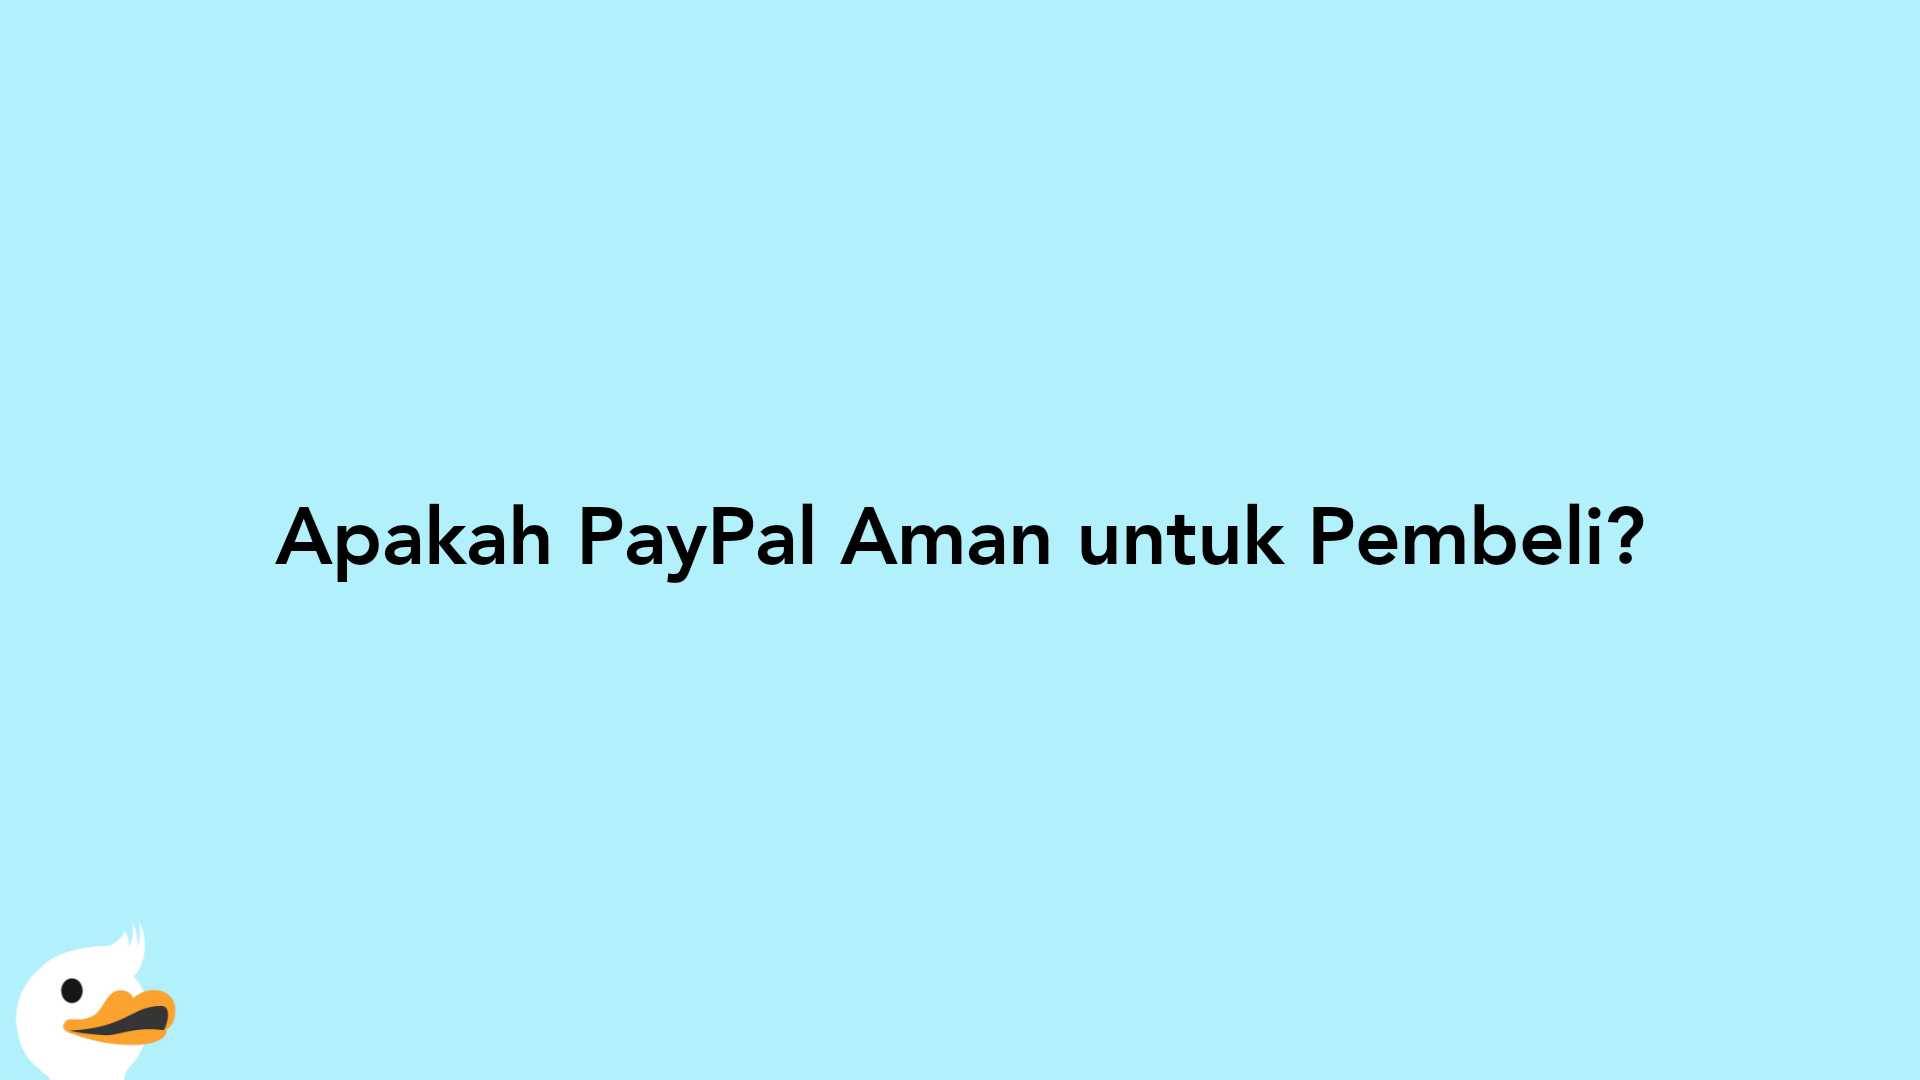 Apakah PayPal Aman untuk Pembeli?